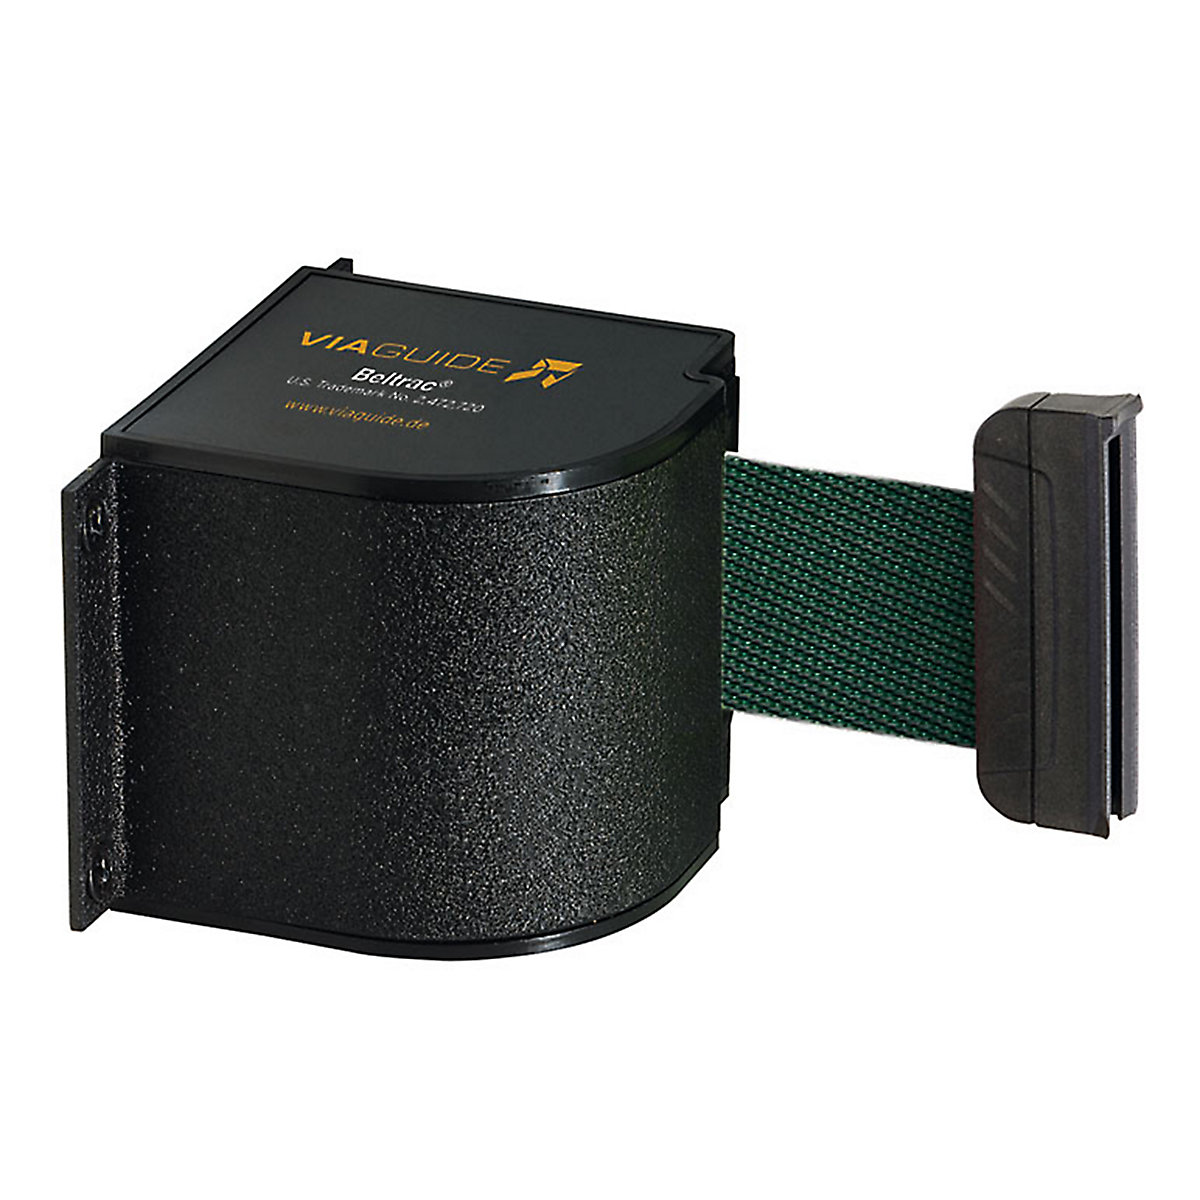 Cassete de cinta Wall Mount, extração máx. da cinta 5400 mm, cor da cinta verde-6